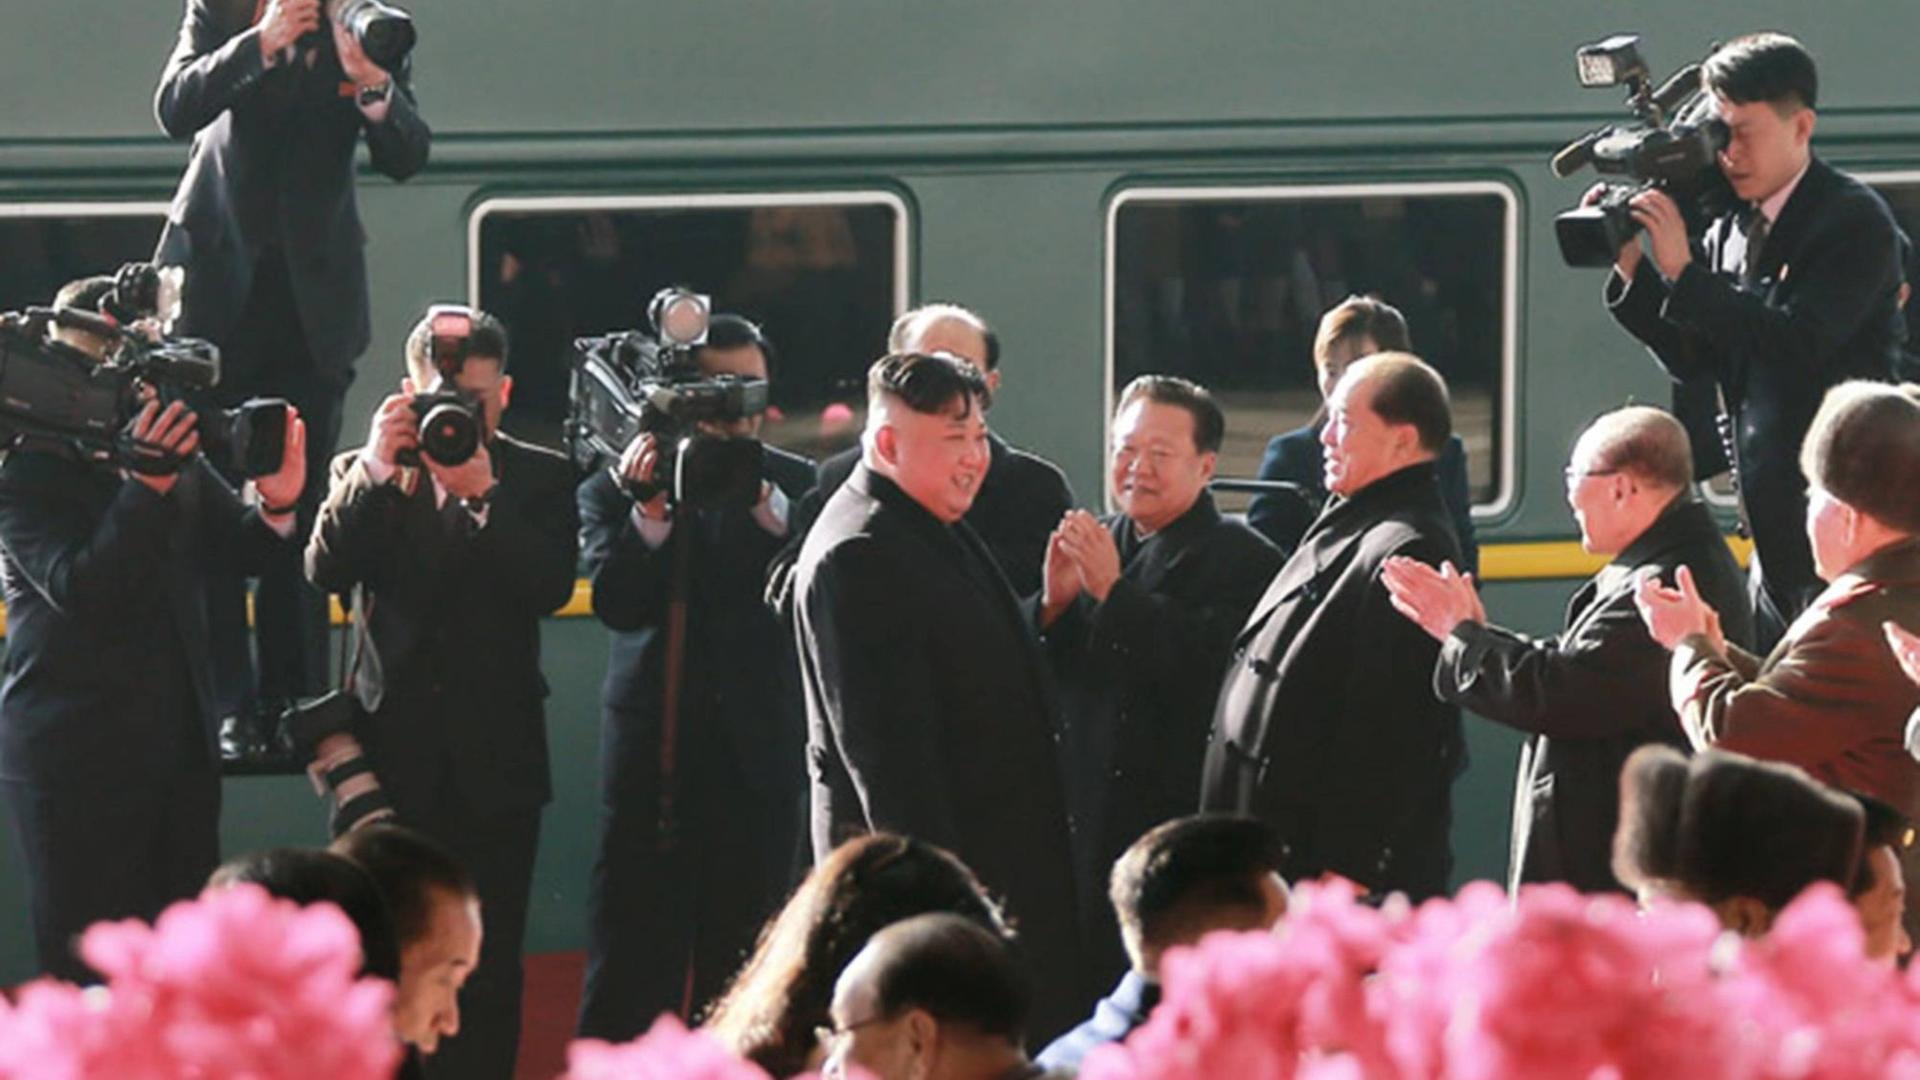 Kim Jung Un ist umringt von Kamerateams vor einem Zug zu sehen.